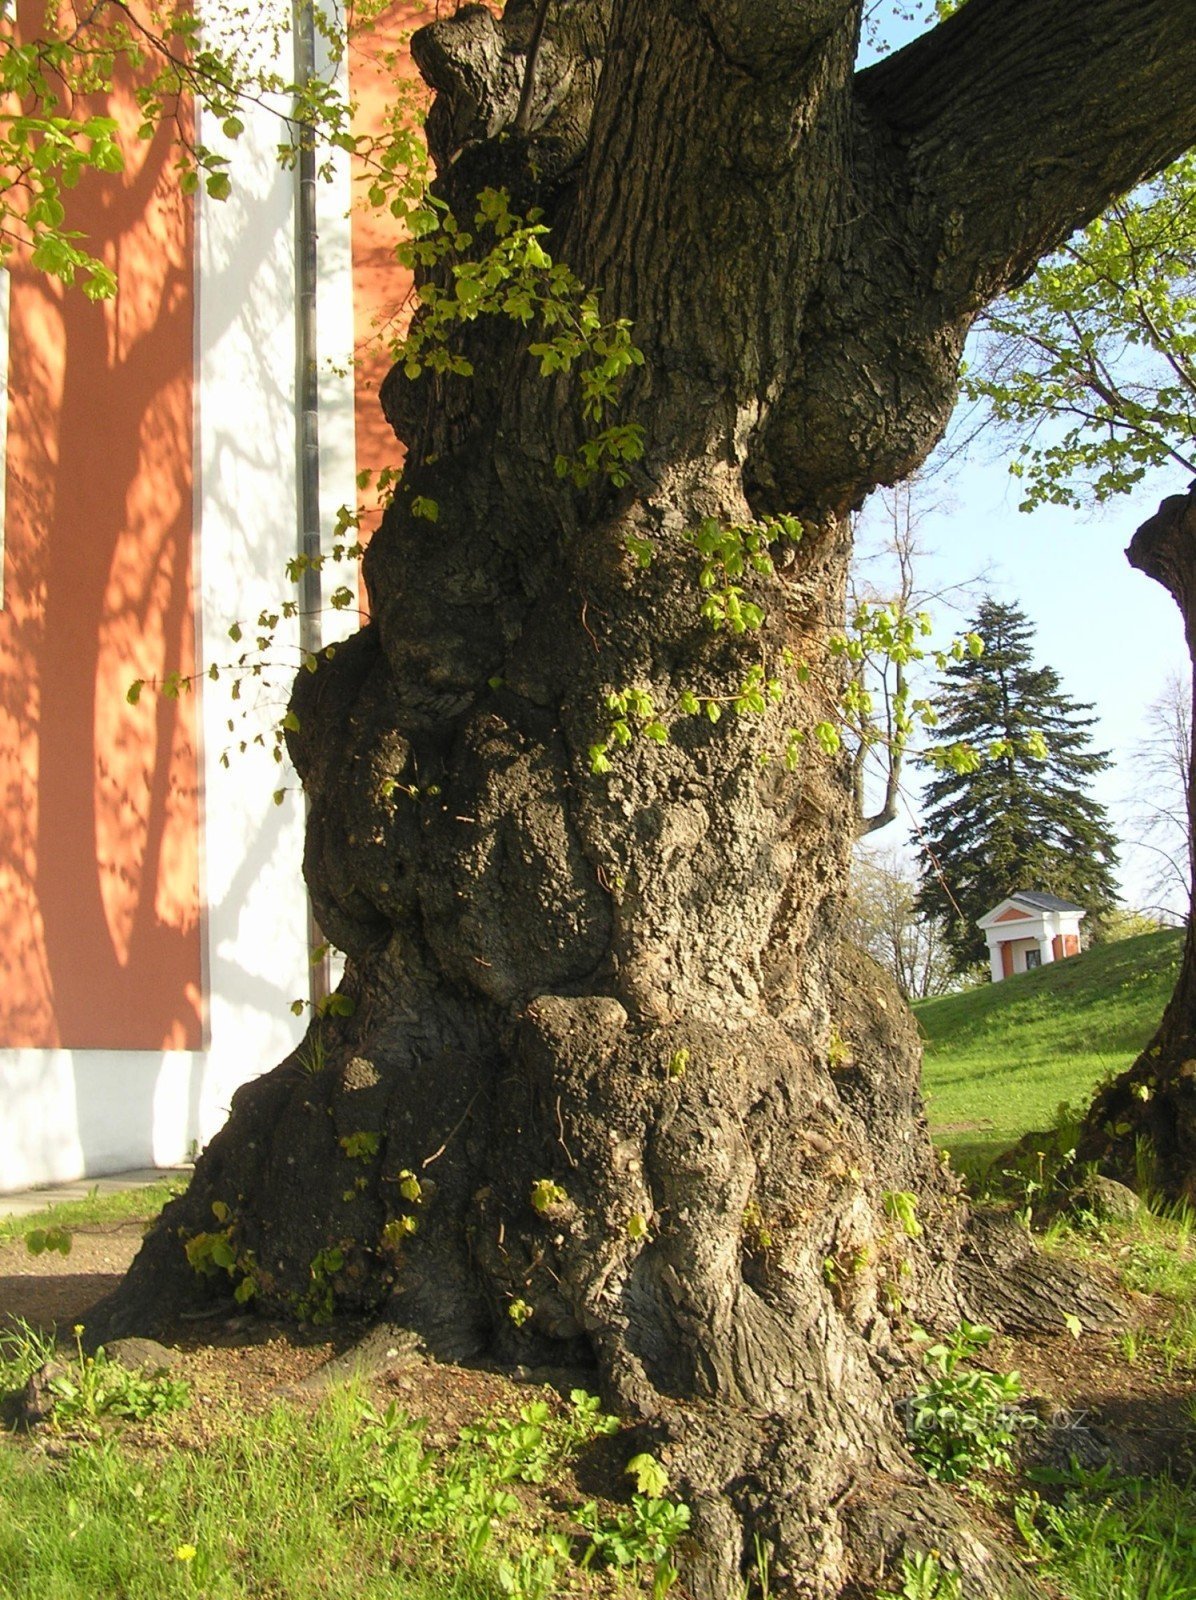 Cvilín の教会近くの菩提樹 - 幹の詳細 (2009 年 XNUMX 月)